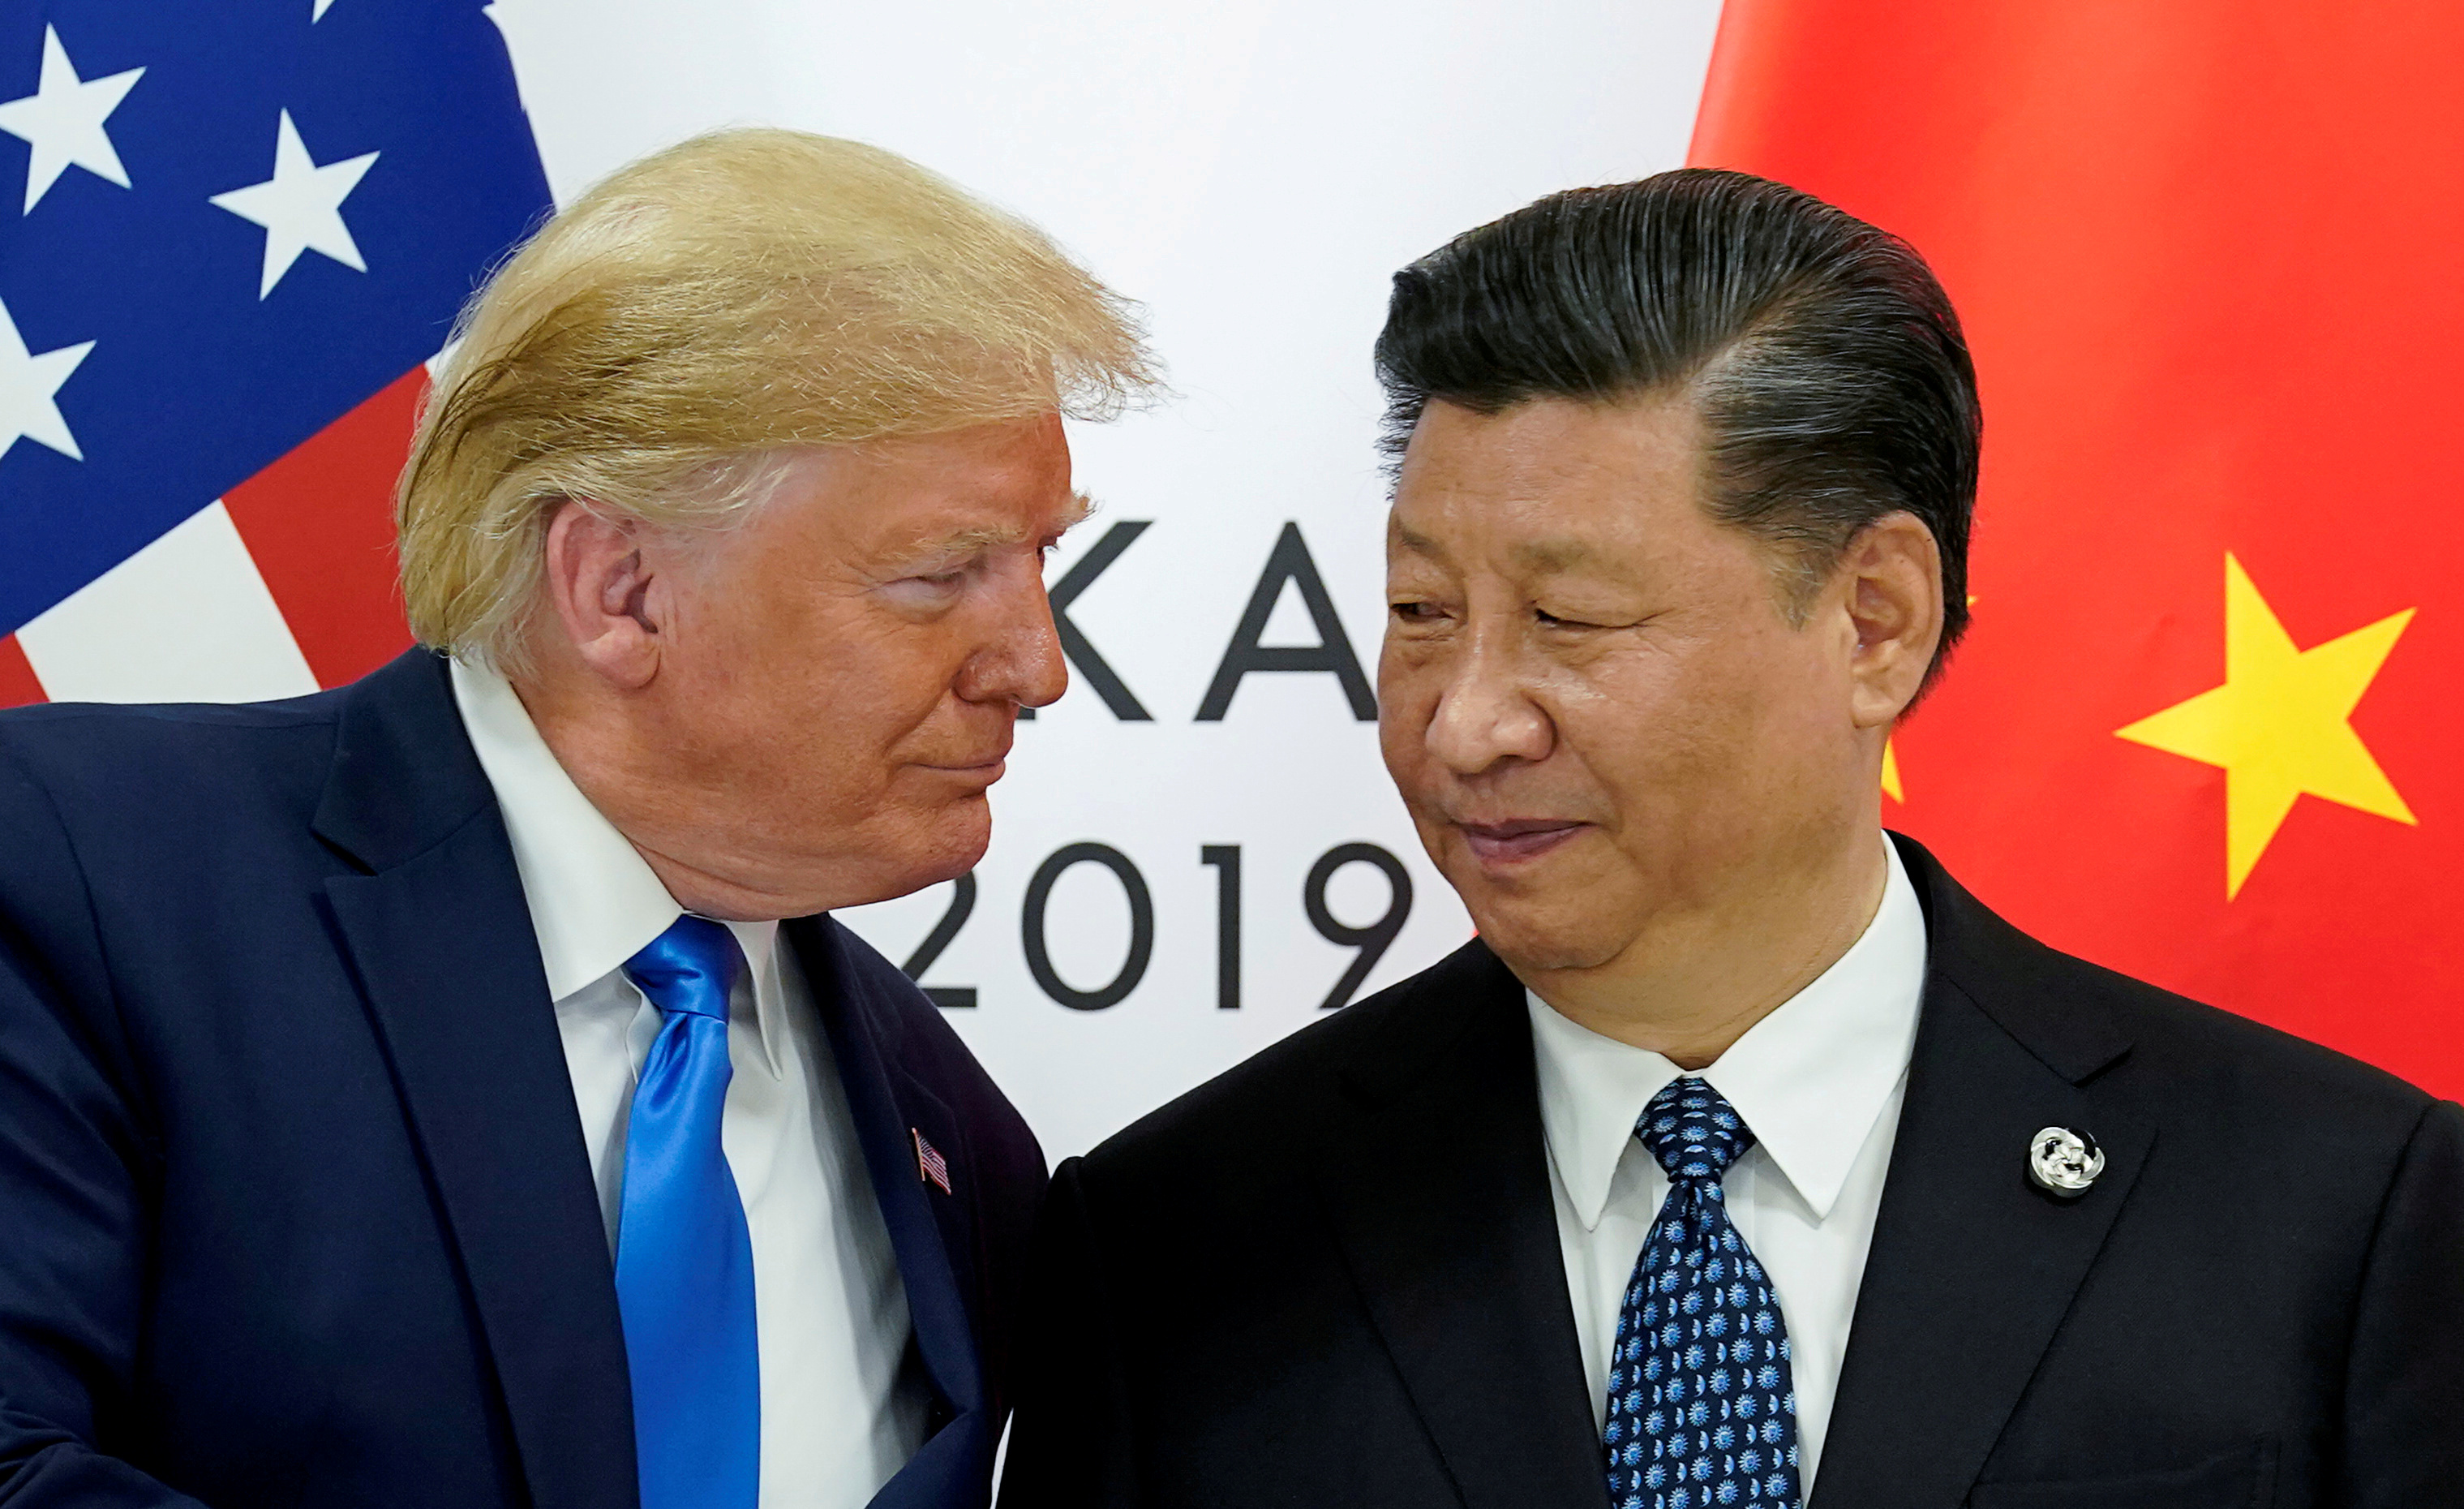 Foto de archivo de los presidentes Donald Trump y Xi Jinping en la cumbre de Osaka, el 29 de junio de 2019 (REUTERS/Kevin Lamarque/File Photo)